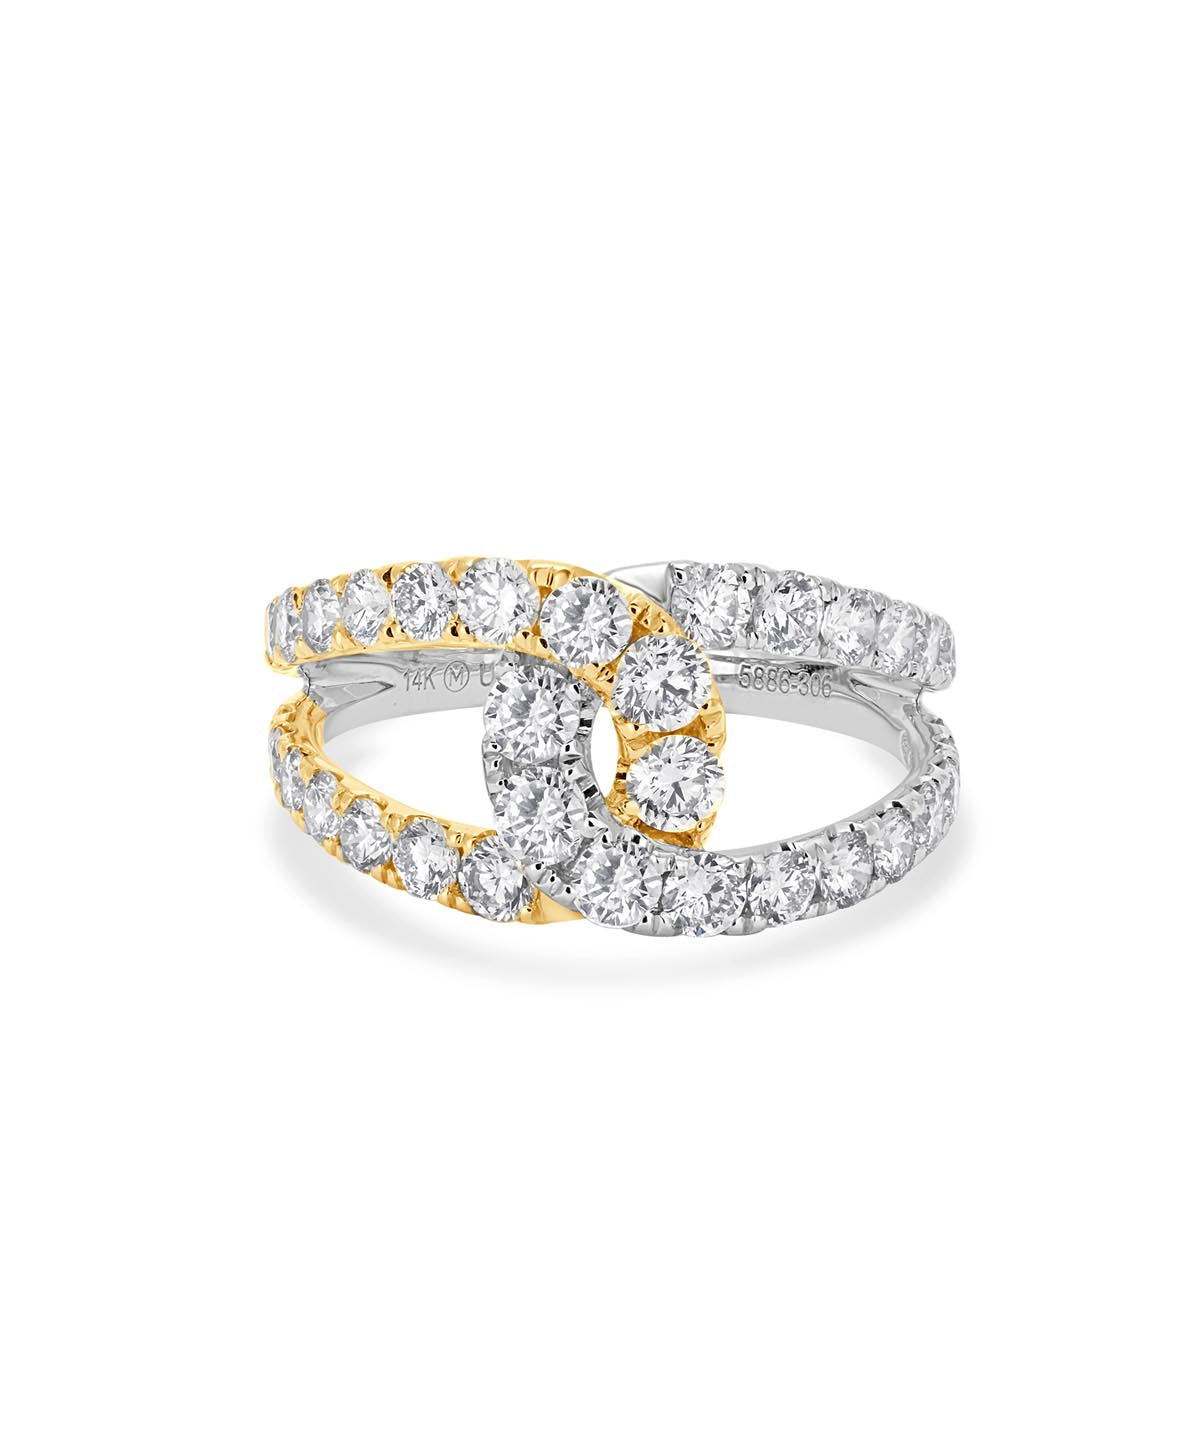 14K White & Yellow Gold Diamond Fashion Ring